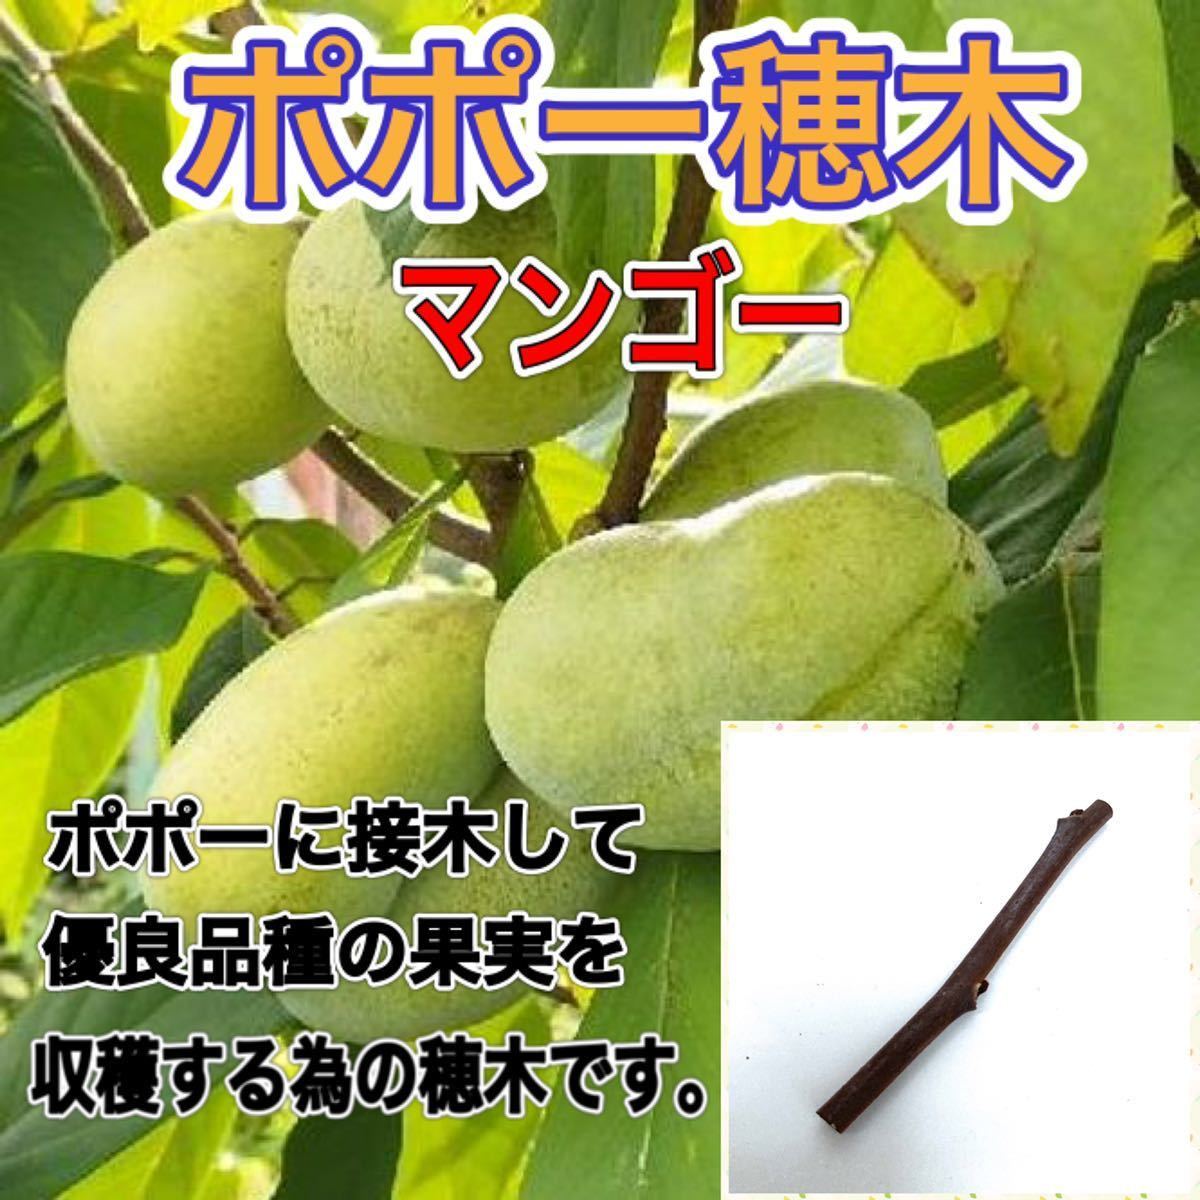 ポポー穂木 マンゴー種 1本 果物 売買されたオークション情報 Yahooの商品情報をアーカイブ公開 オークファン Aucfan Com